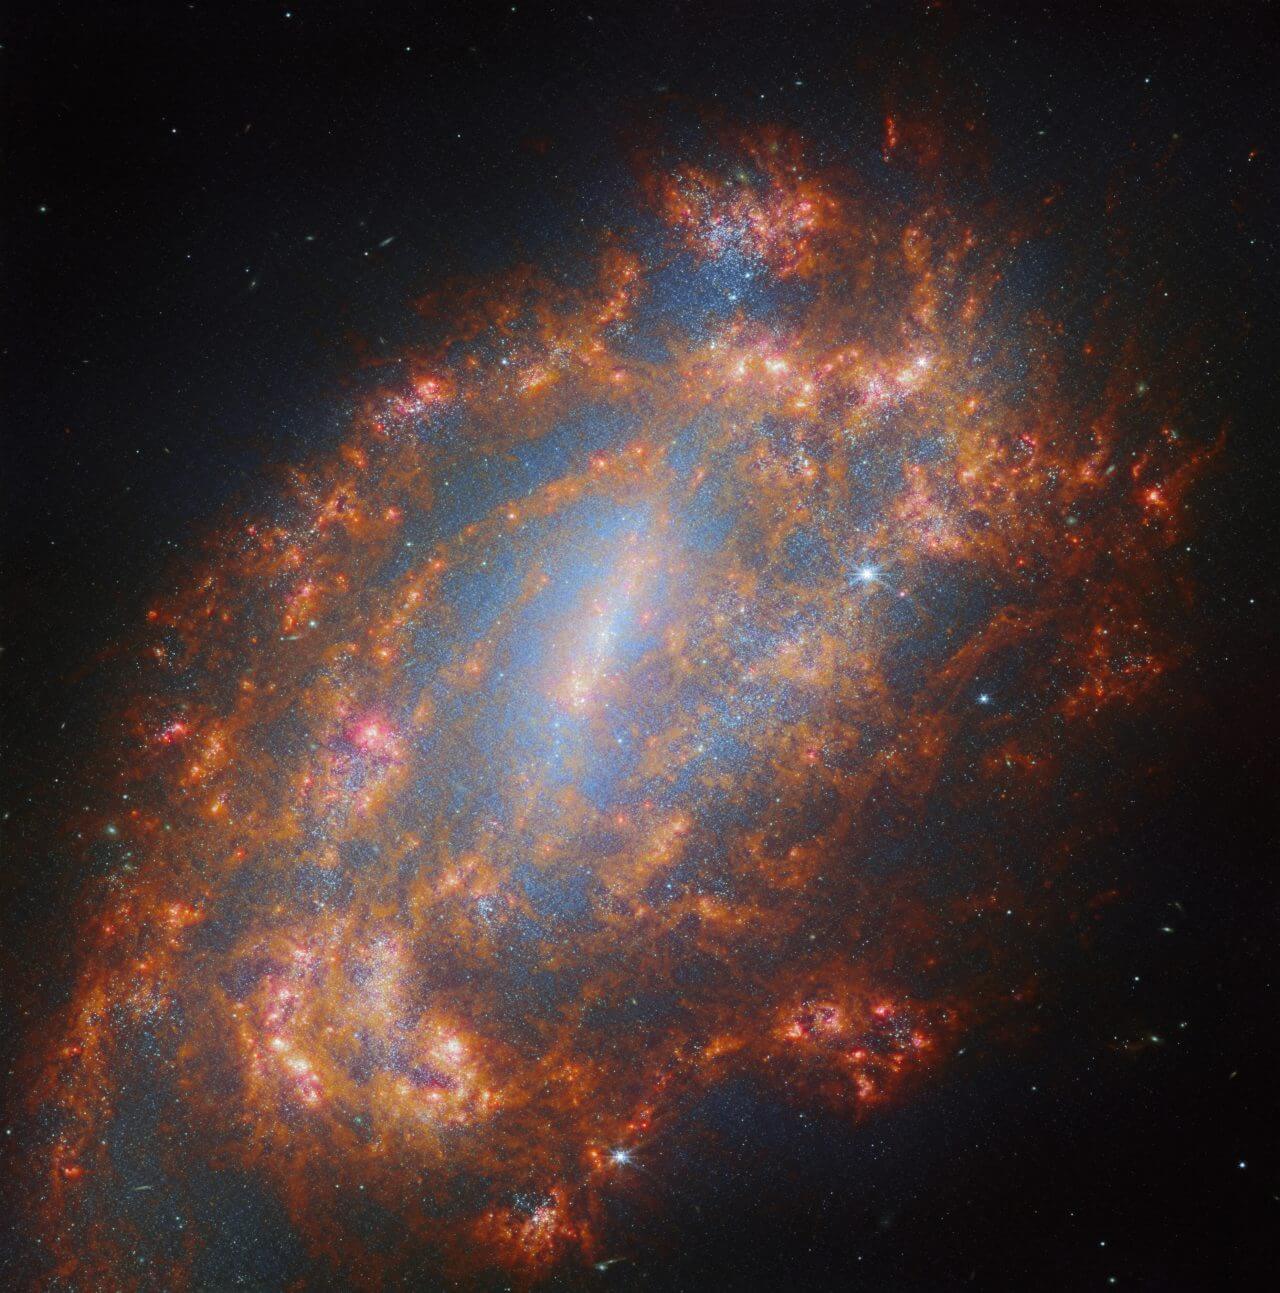 ウェッブ宇宙望遠鏡で観測した“レチクル座”の孤独な棒渦巻銀河 